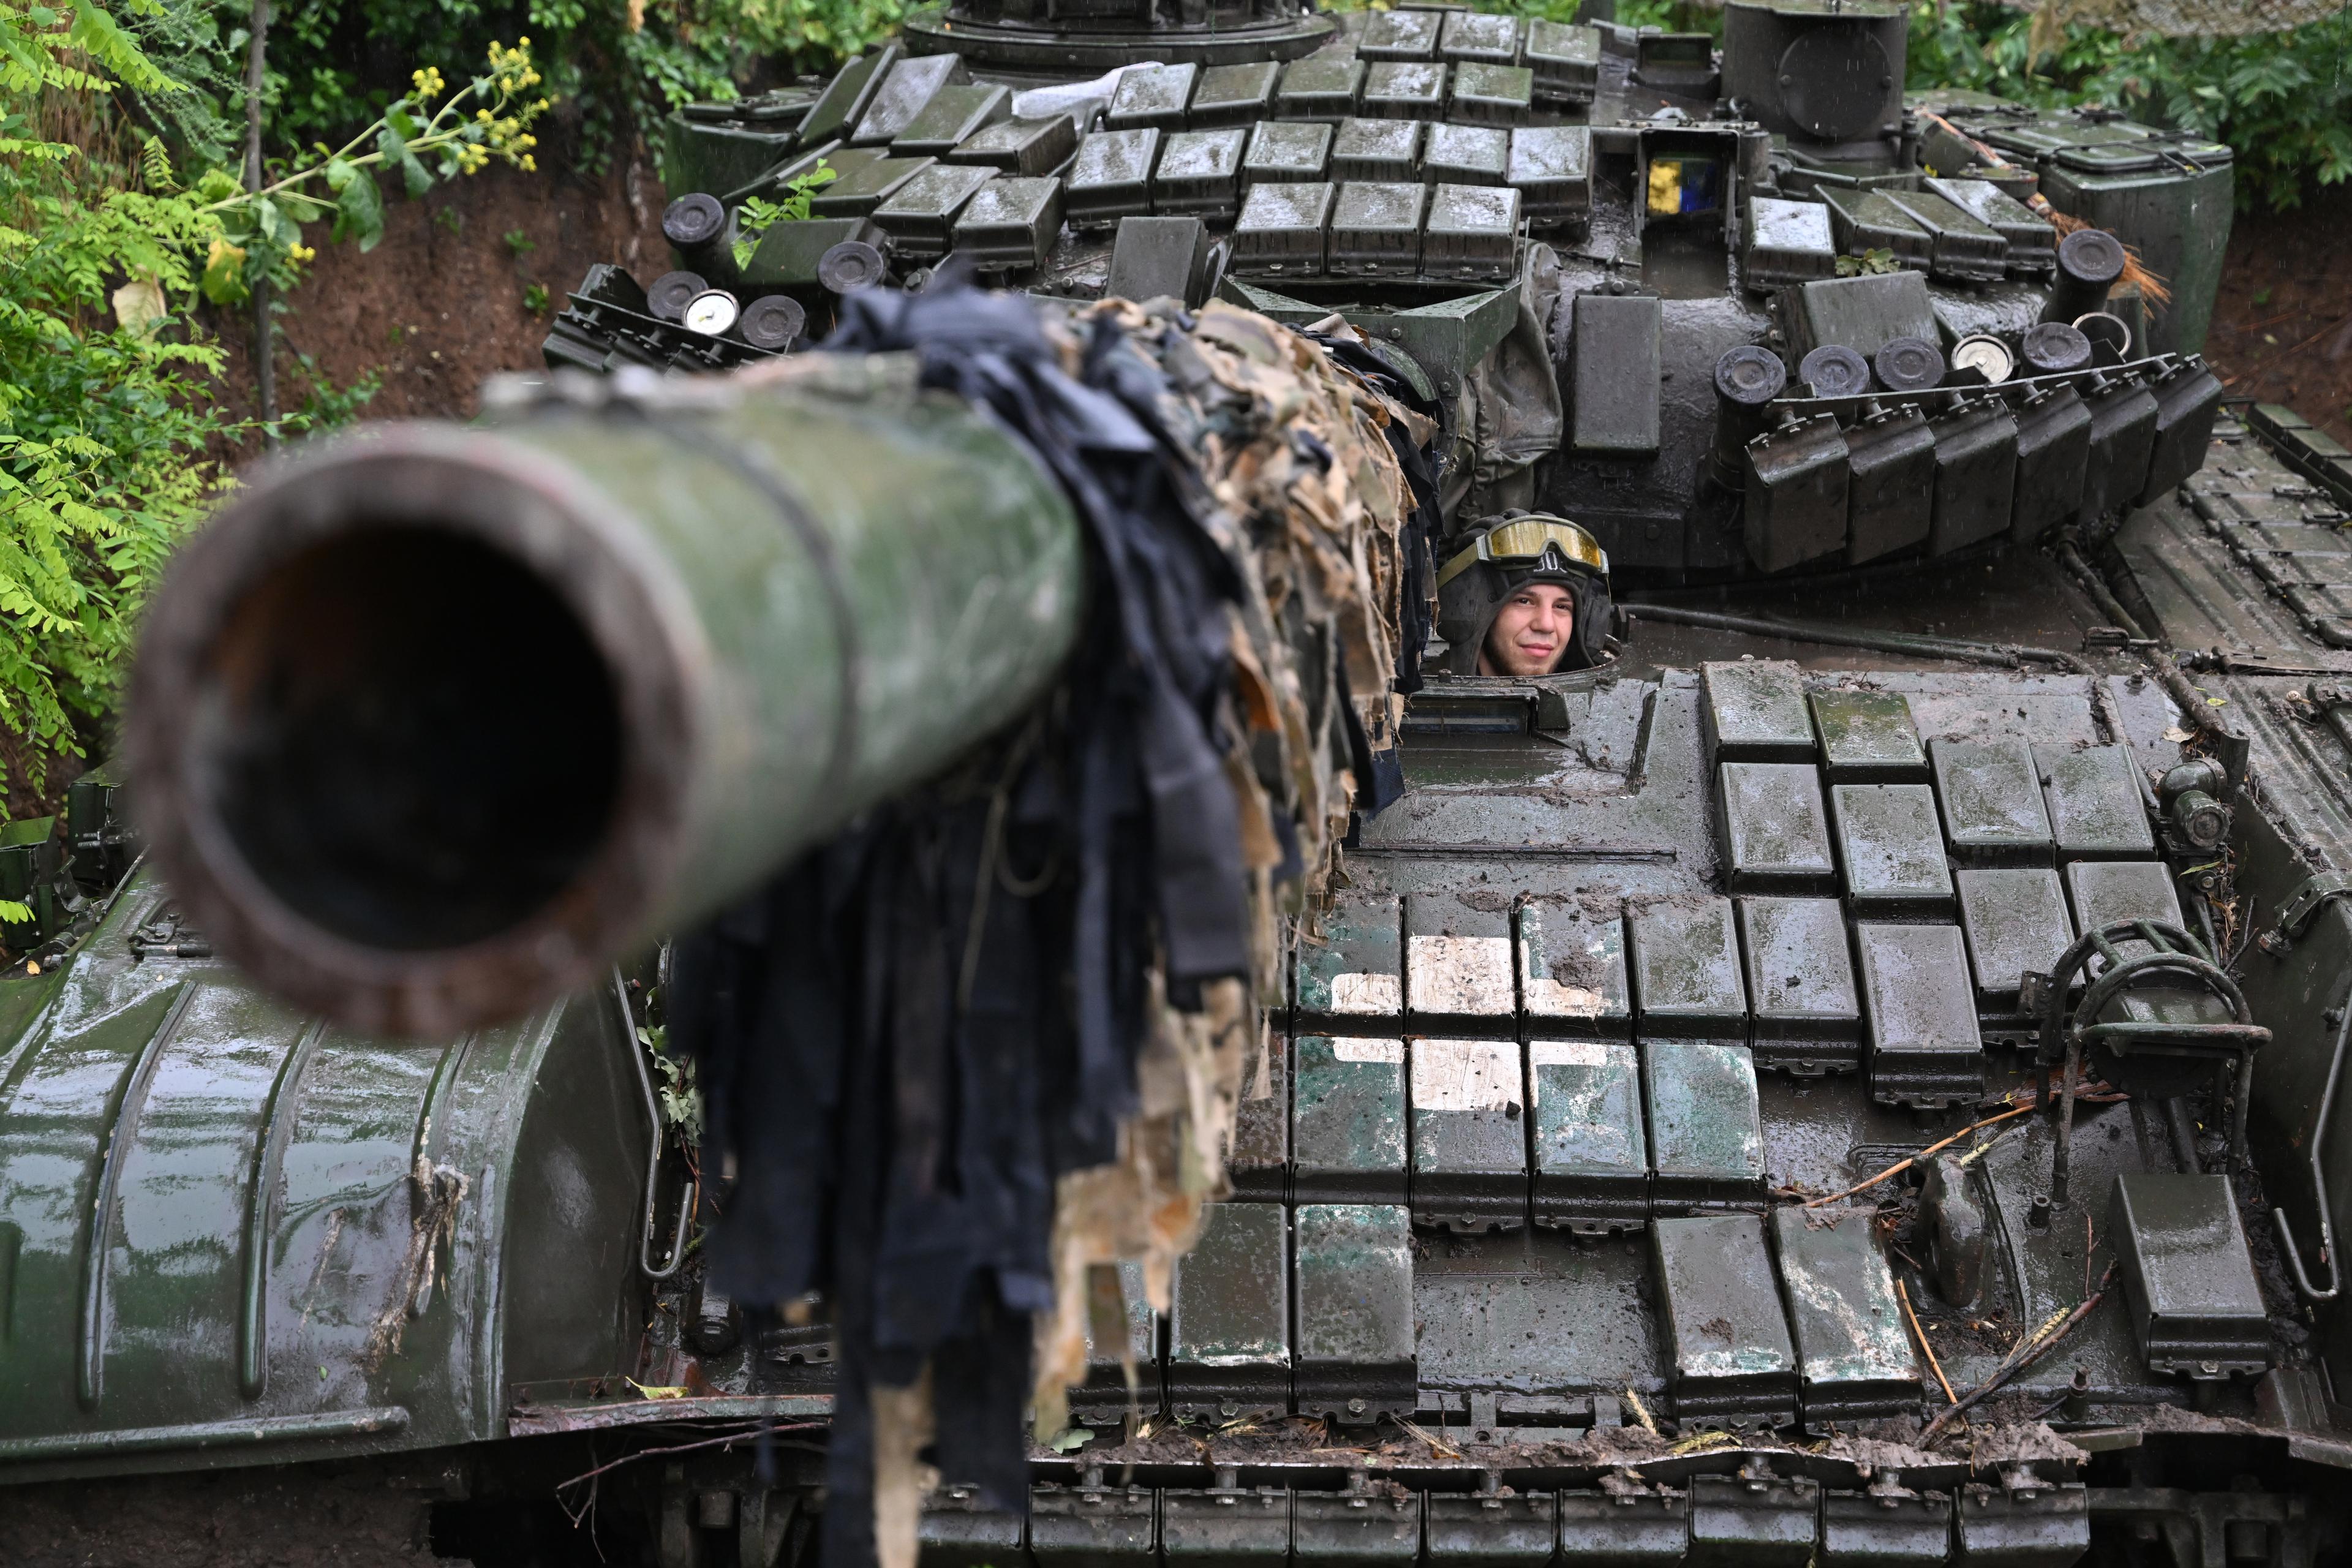 Żołnierz ukraiński we włazie czołgu T-72. Lufa zwrócona w stronę obiektywu